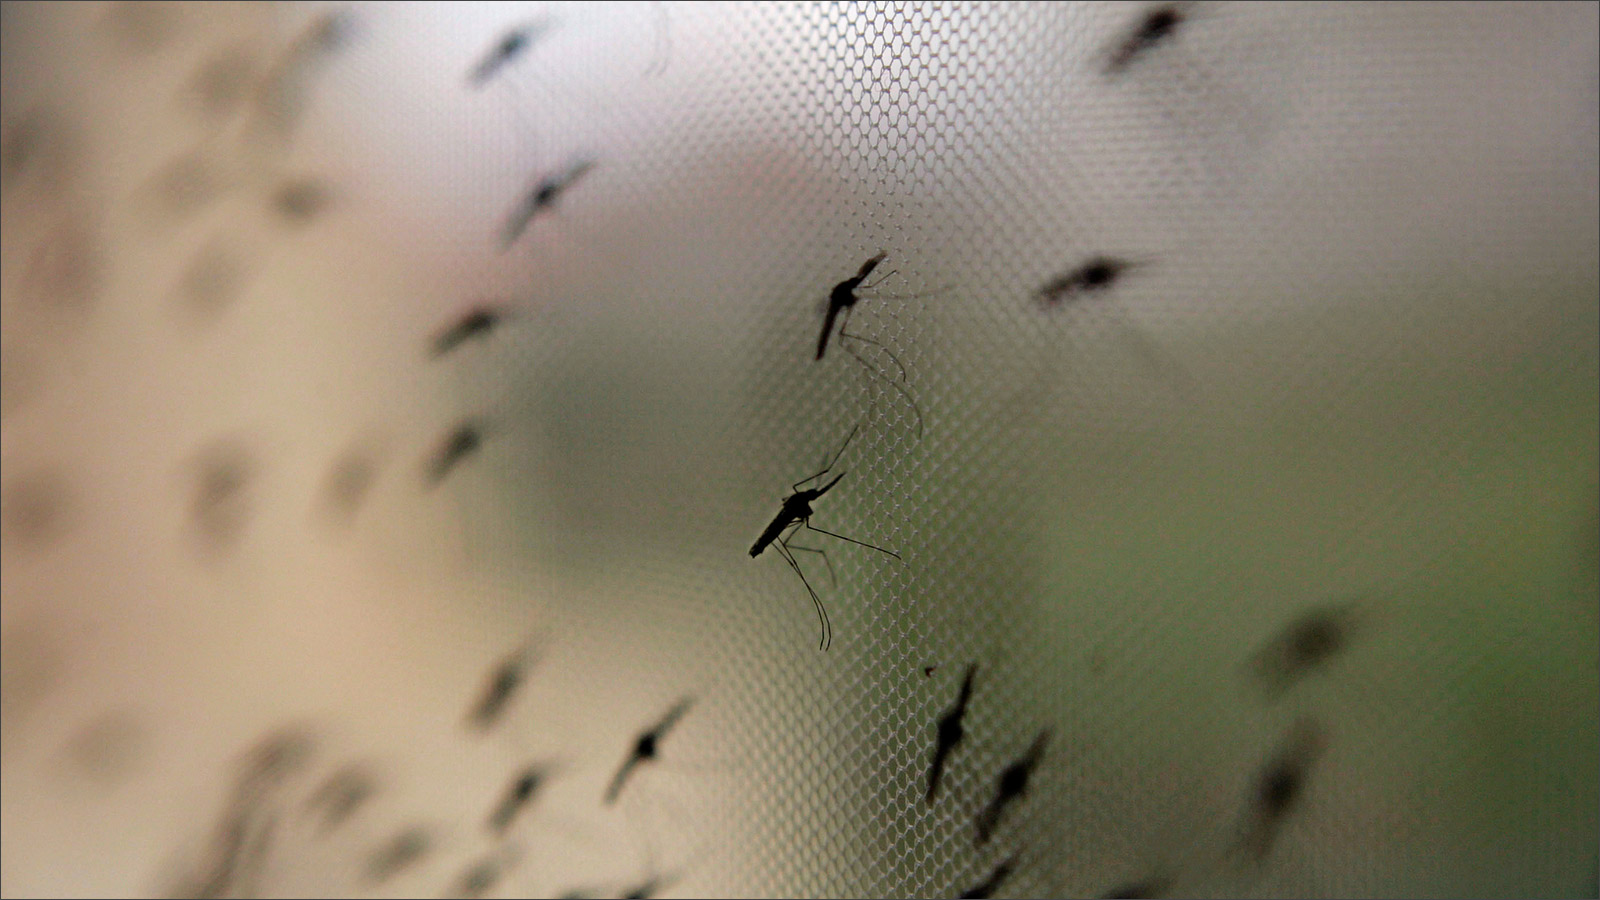 الملاريا التي تنتقل عبر البعوض تعد من الأمراض الخطيرة (وكالة الأنباء الألمانية)